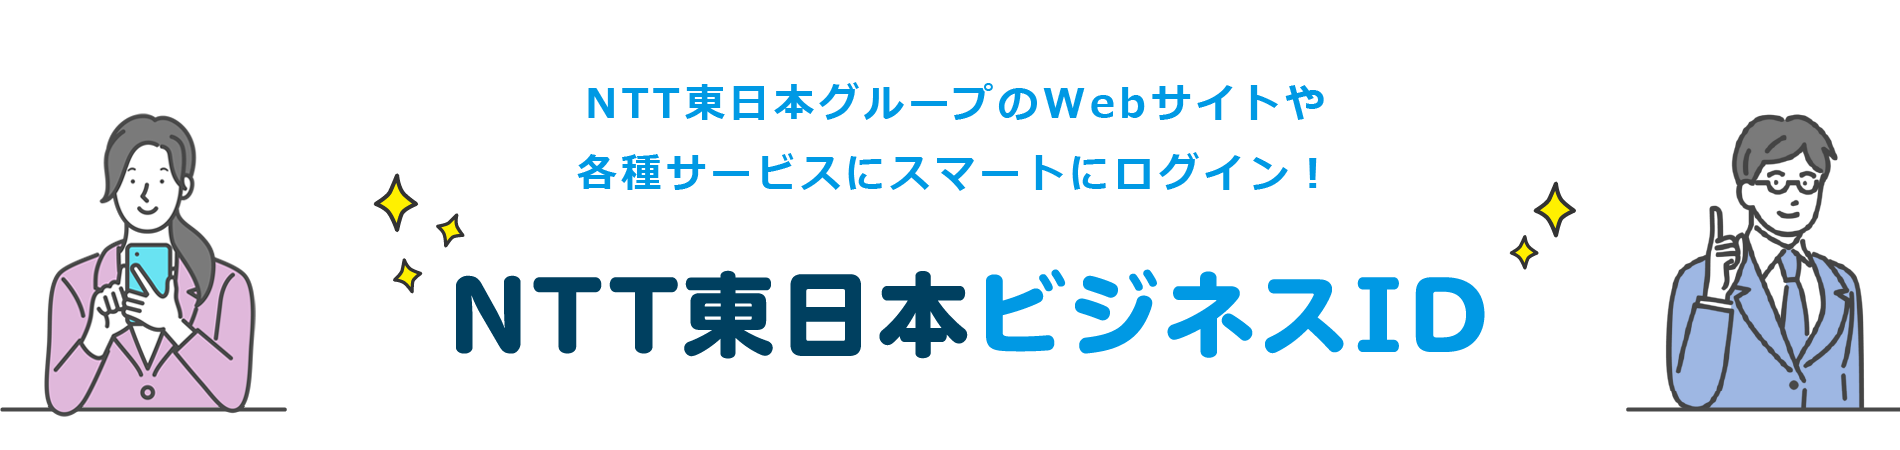 NTT東日本の法人のお客さま向けWebサイトや各種サービスにスマートにログイン！NTT東日本ビジネスID